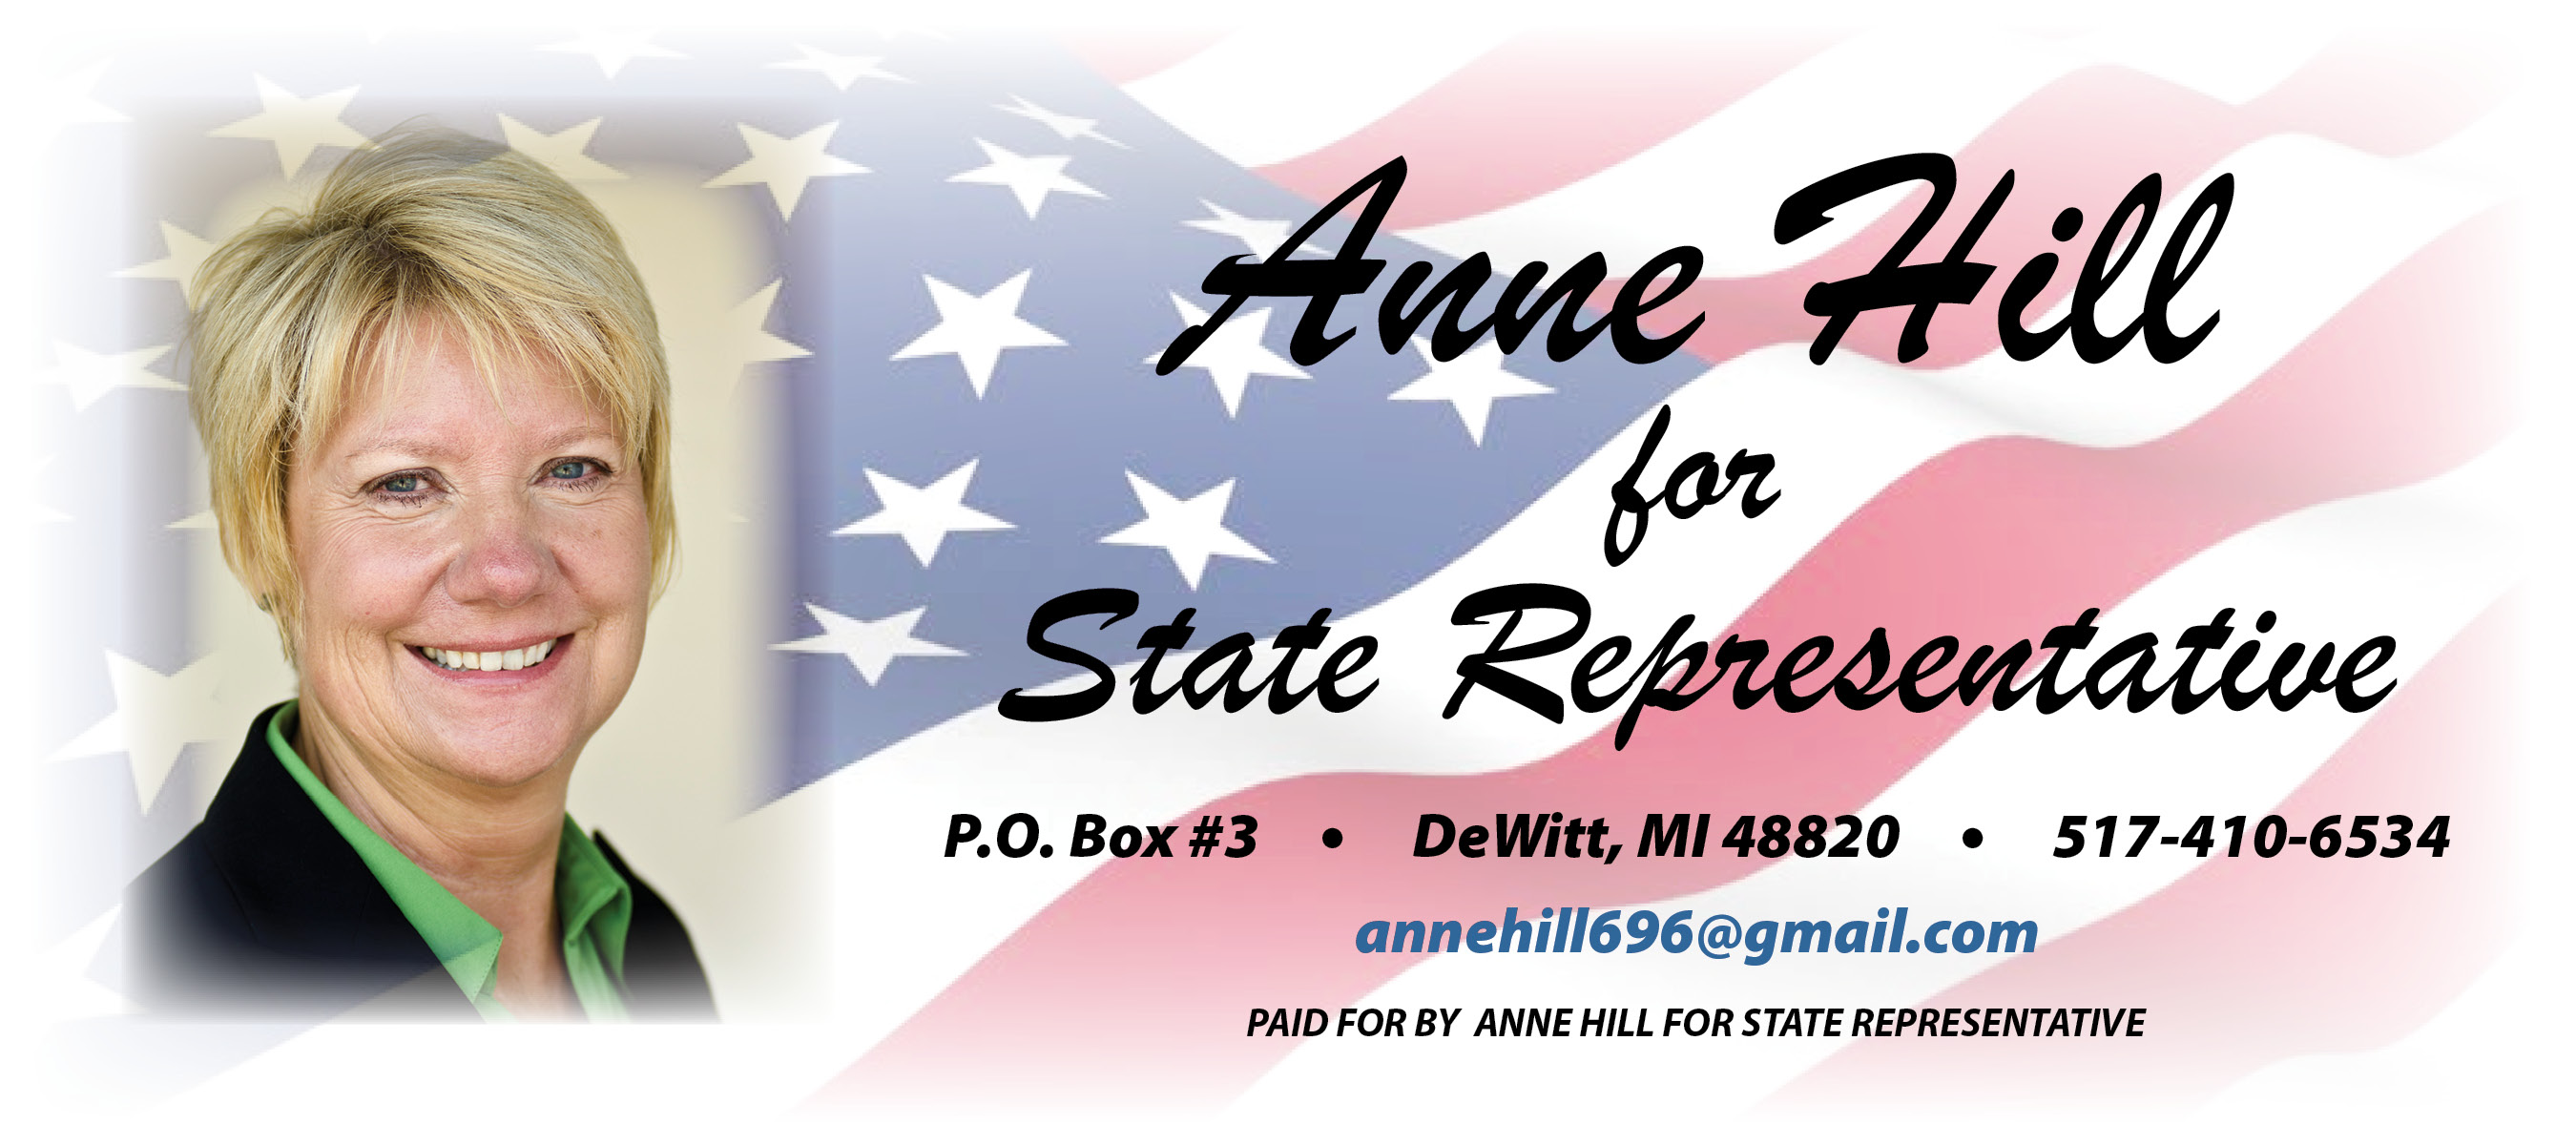 Anne Hill for State Representative logo